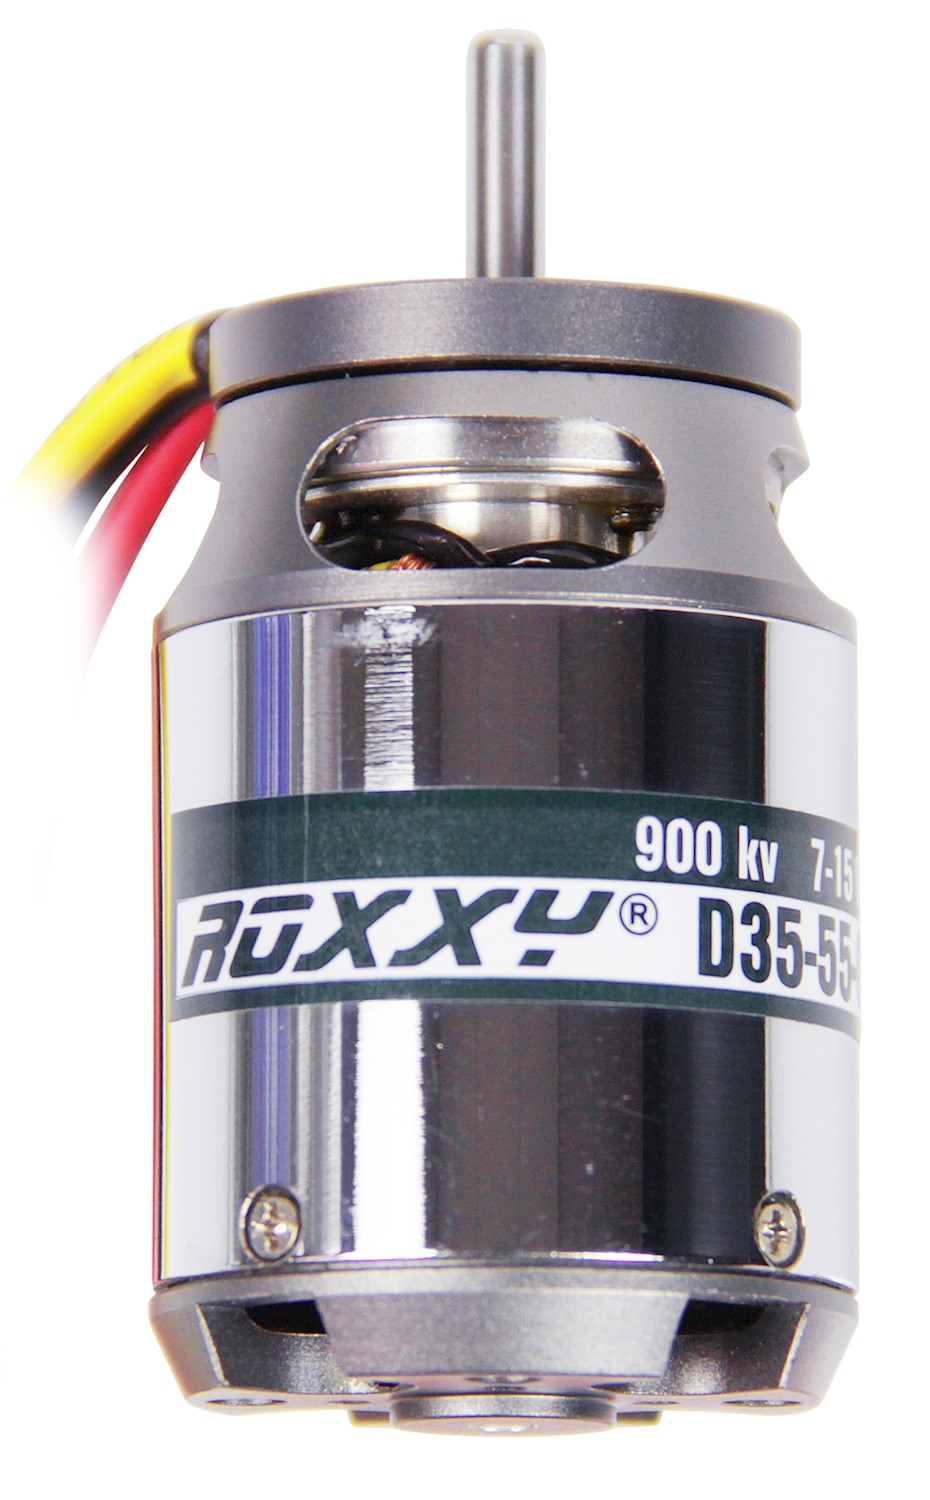 Multiplex ROXXY Brushless Motor BL Outrunner D35-55-900kV